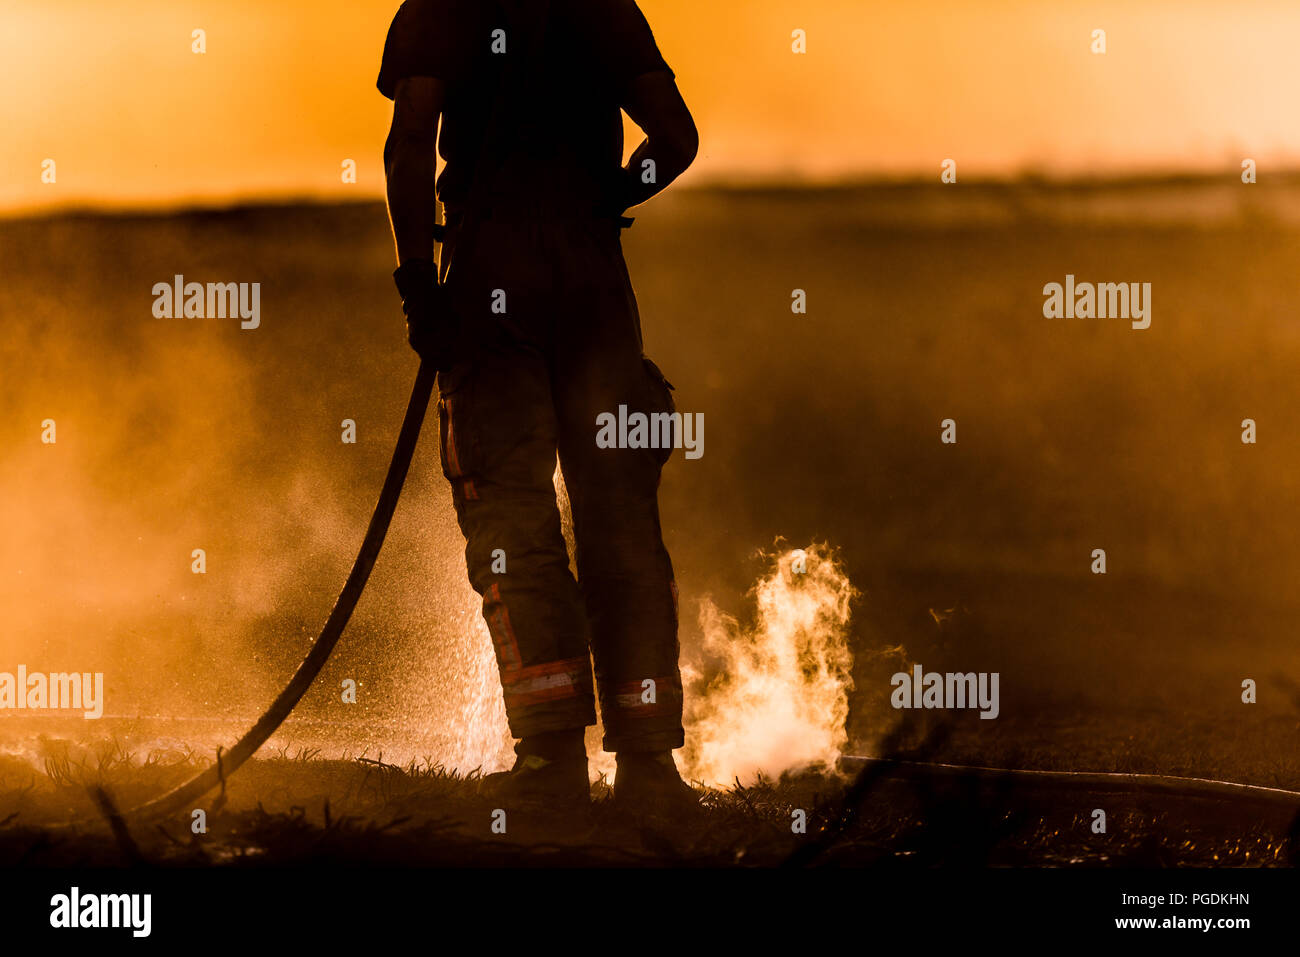 Fire fighter stagliano contro il tramonto smorza verso il basso la massa calda per evitare di scottarvi attraverso le manichette antincendio durante il Saddleworth Moor incendi Foto Stock